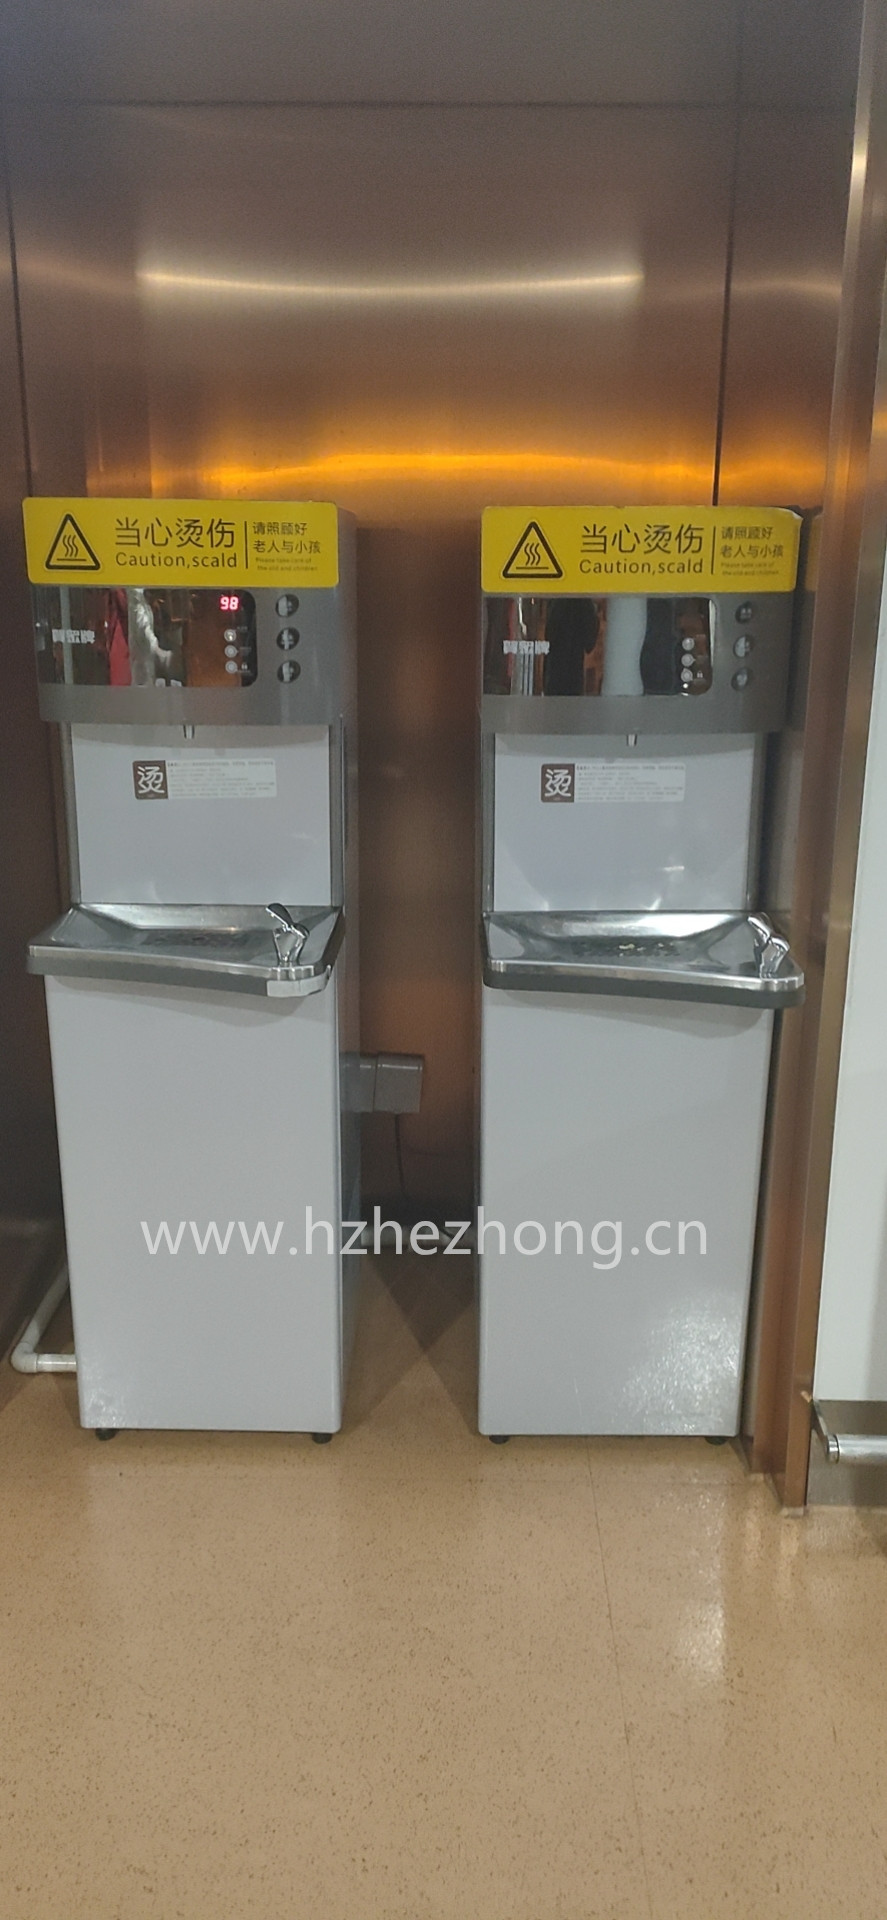 Chongqing Jiangbei International Airport uses ACUO brand water dispenser